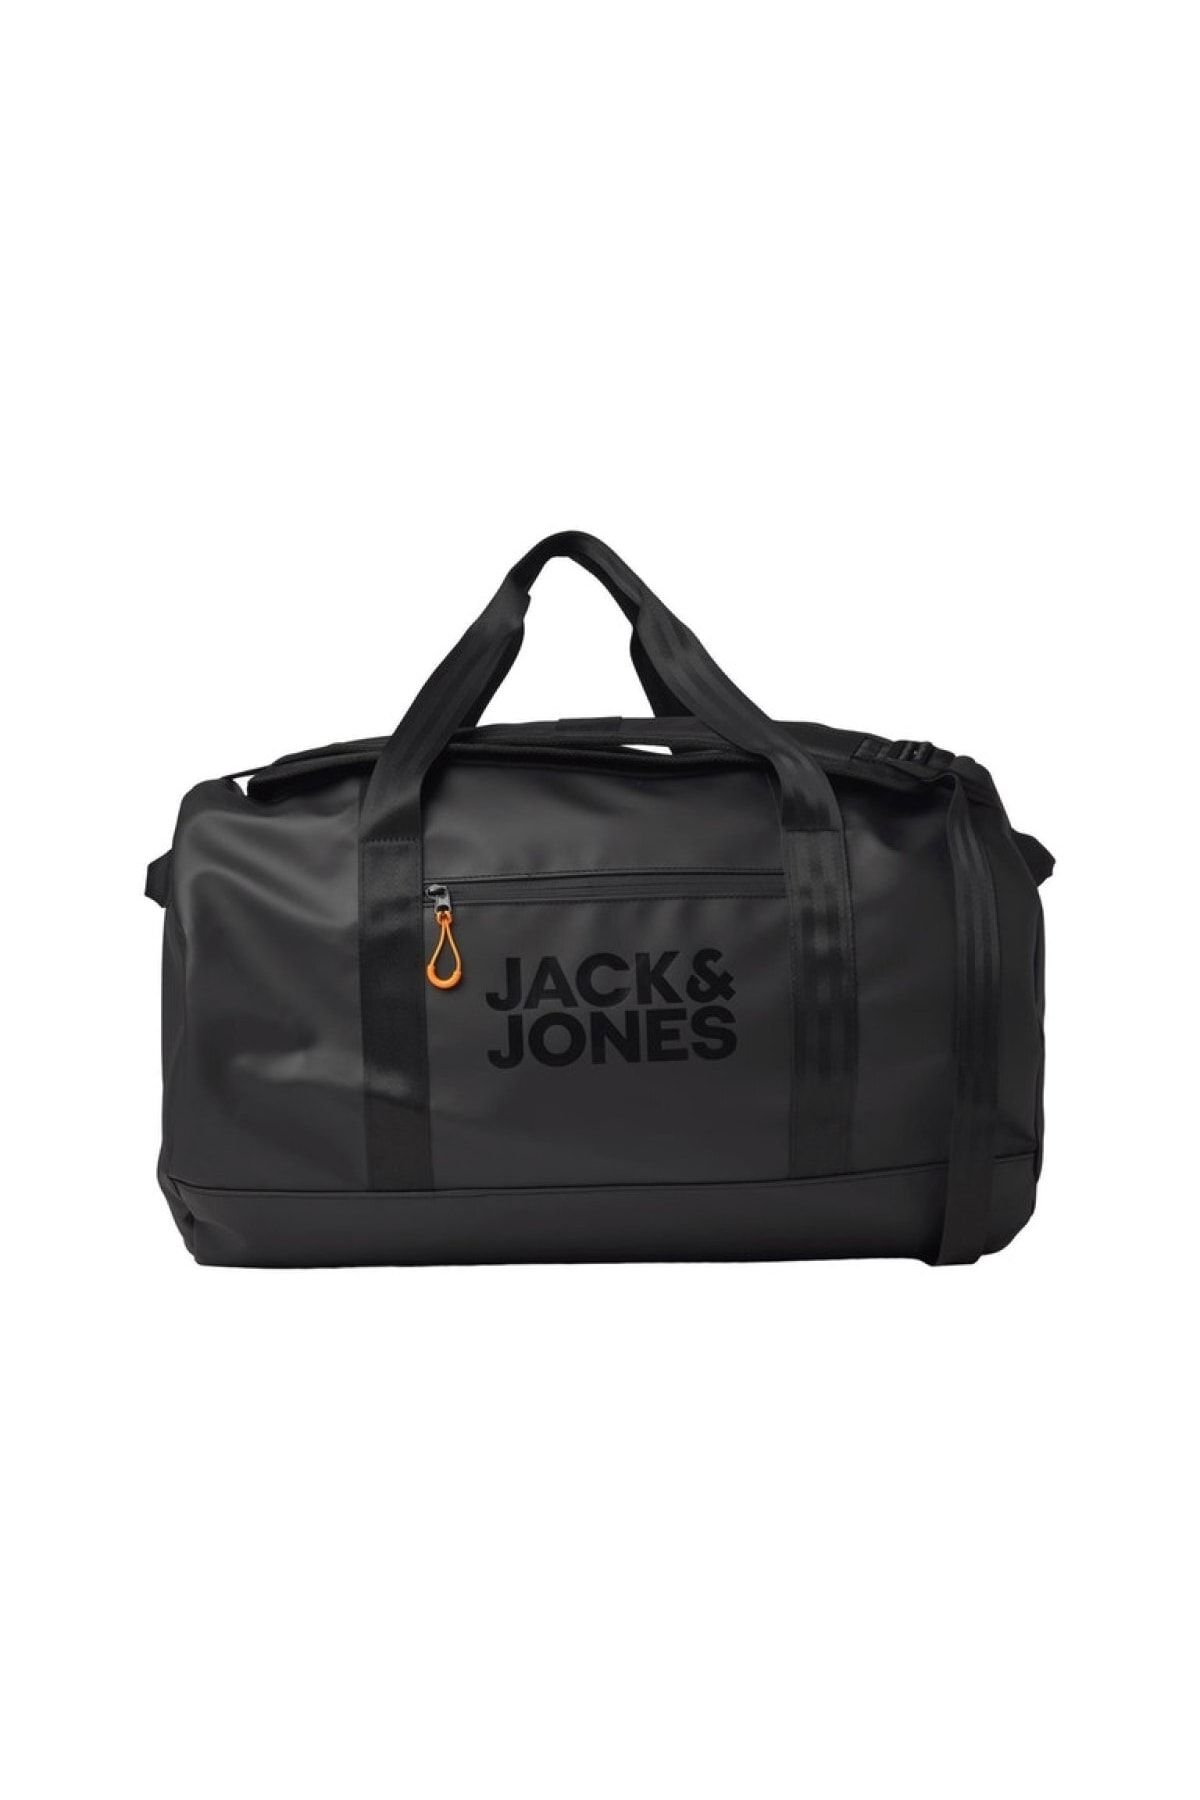 Jack & Jones Jaclab Weekendbag 12214860